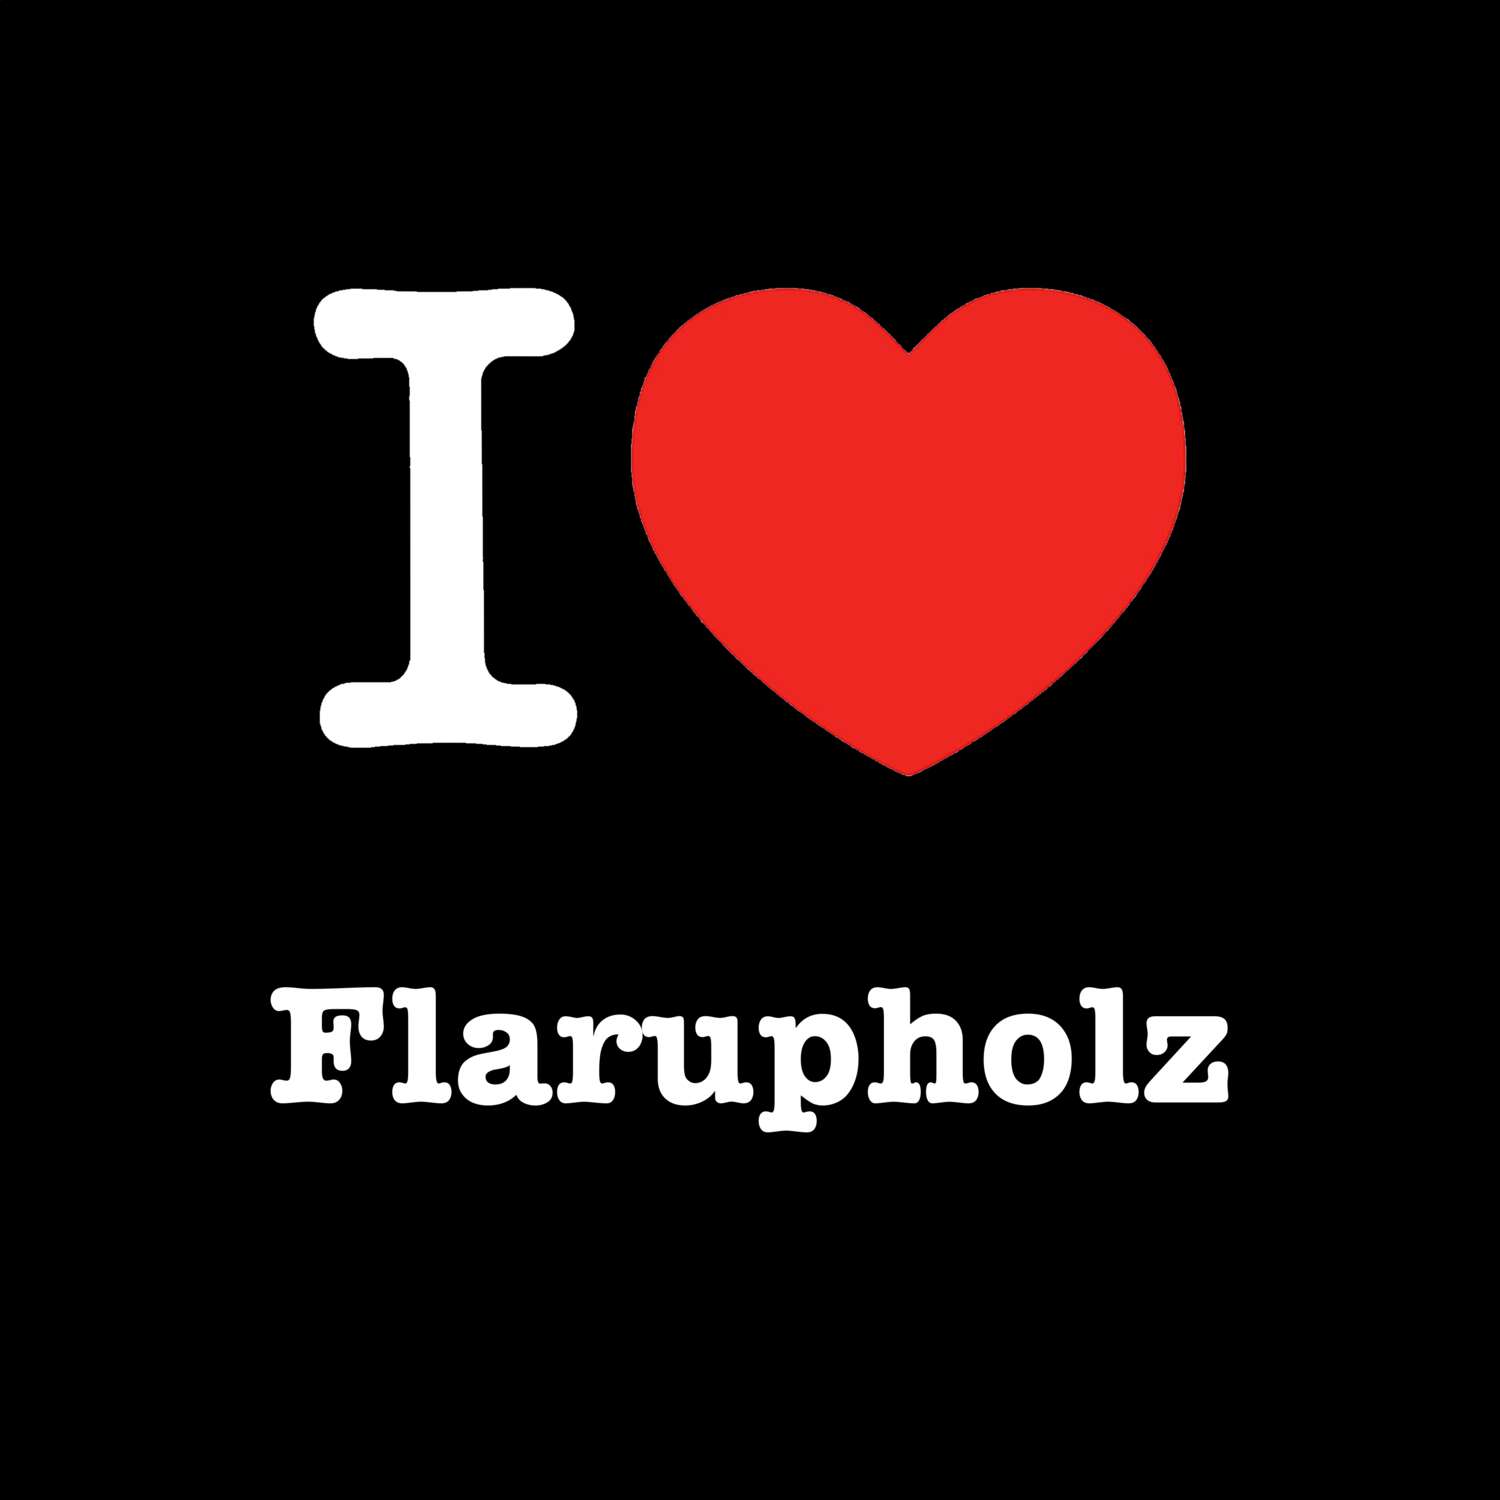 Flarupholz T-Shirt »I love«